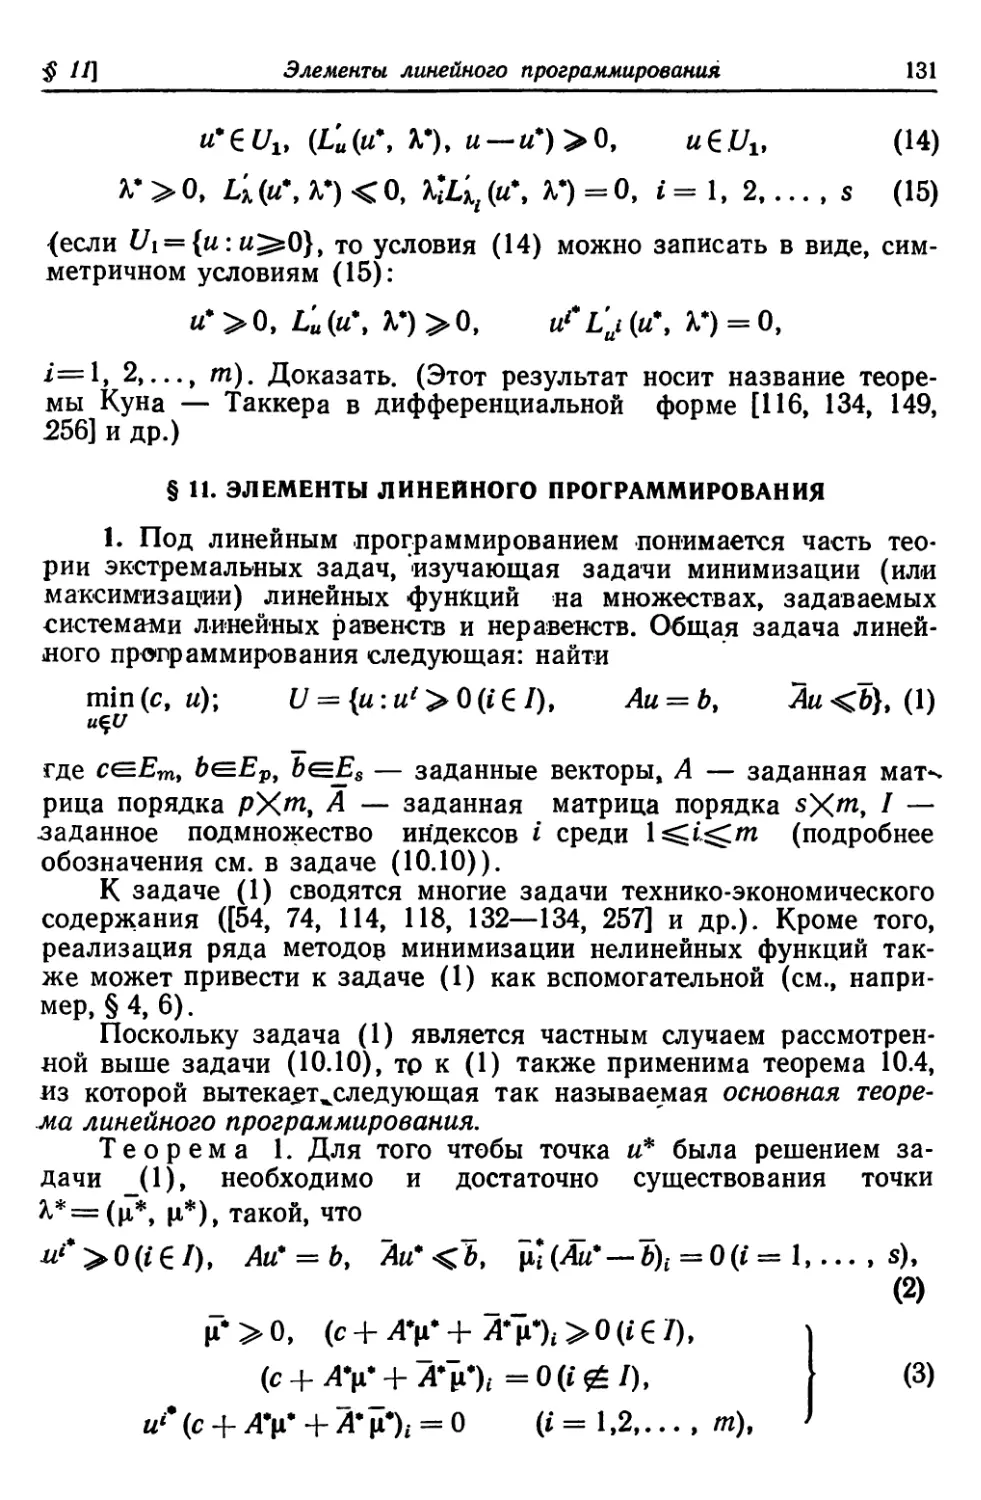 § 11. Элементы линейного программирования